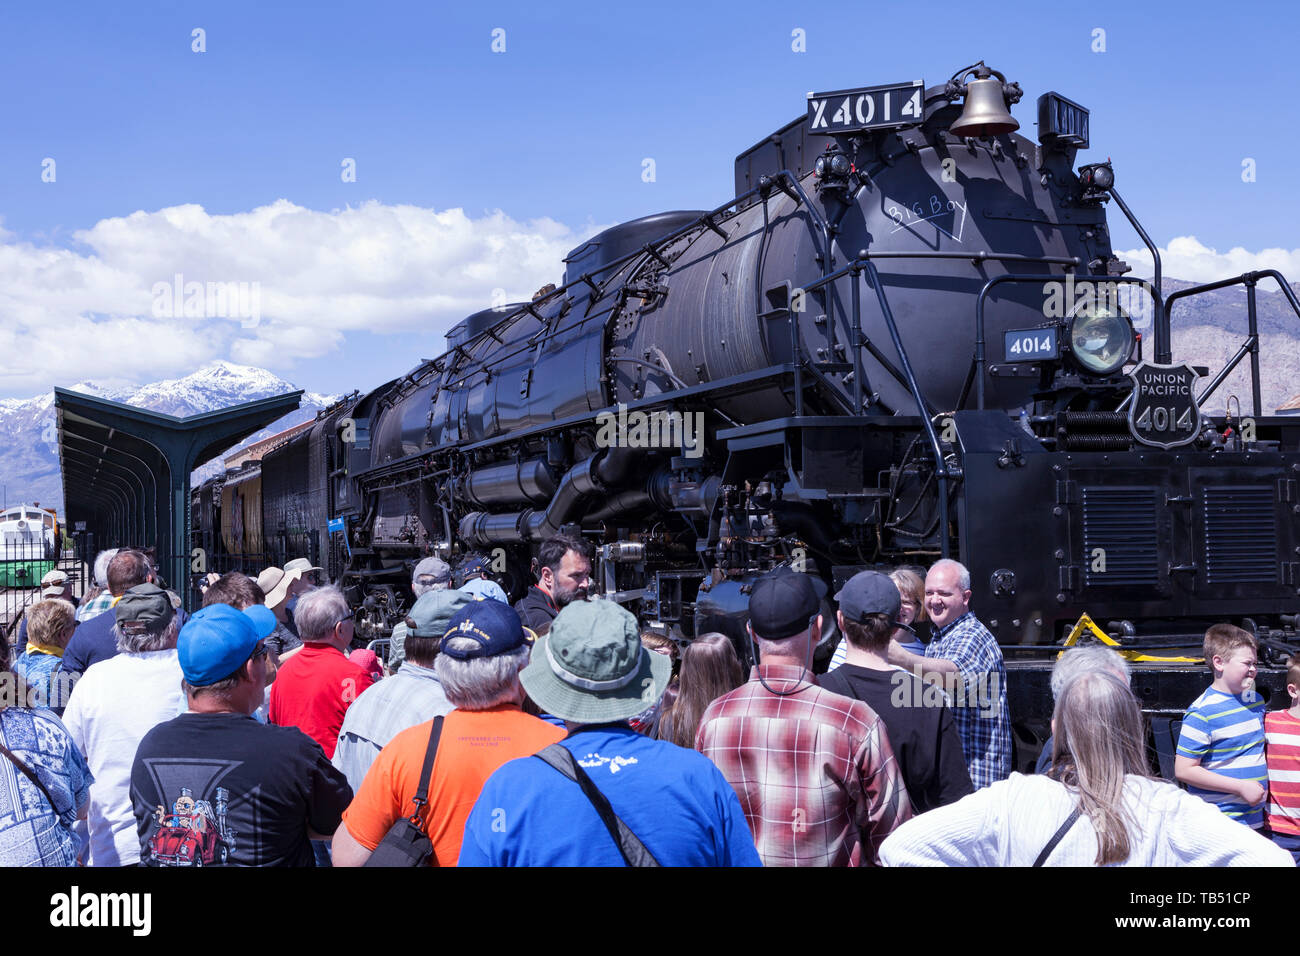 Union Pacific locomotiva a vapore 4014 'Big Boy" si siede sul display alla stazione Union a Ogden, Utah. Foto Stock